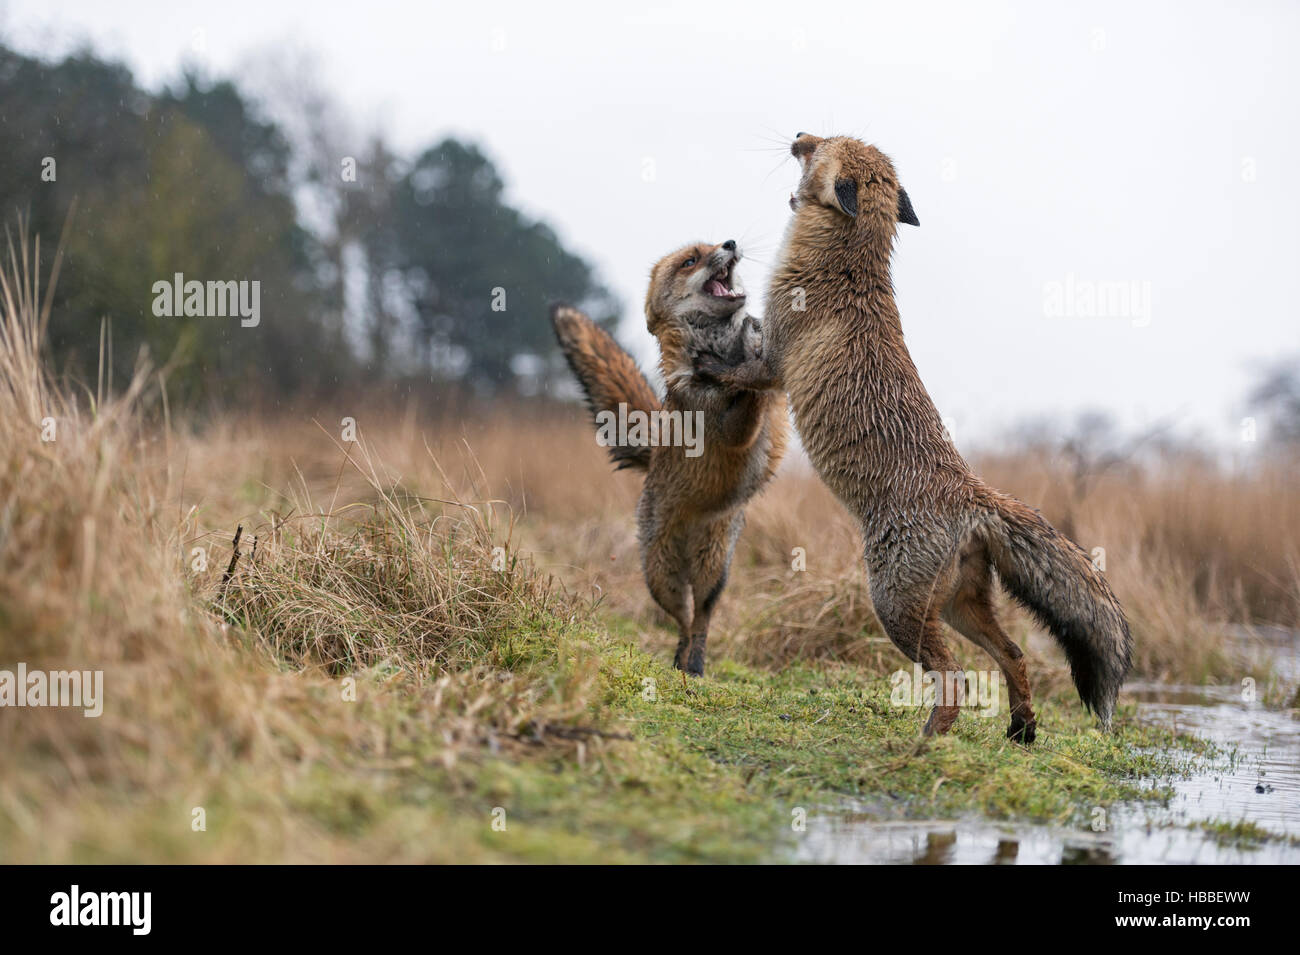 Unione volpi rosse / Rotfuechse ( Vulpes vulpes ) nella dura lotta, in piedi sulle zampe posteriori, spettacolare a basso punto di vista, nel loro habitat. Foto Stock